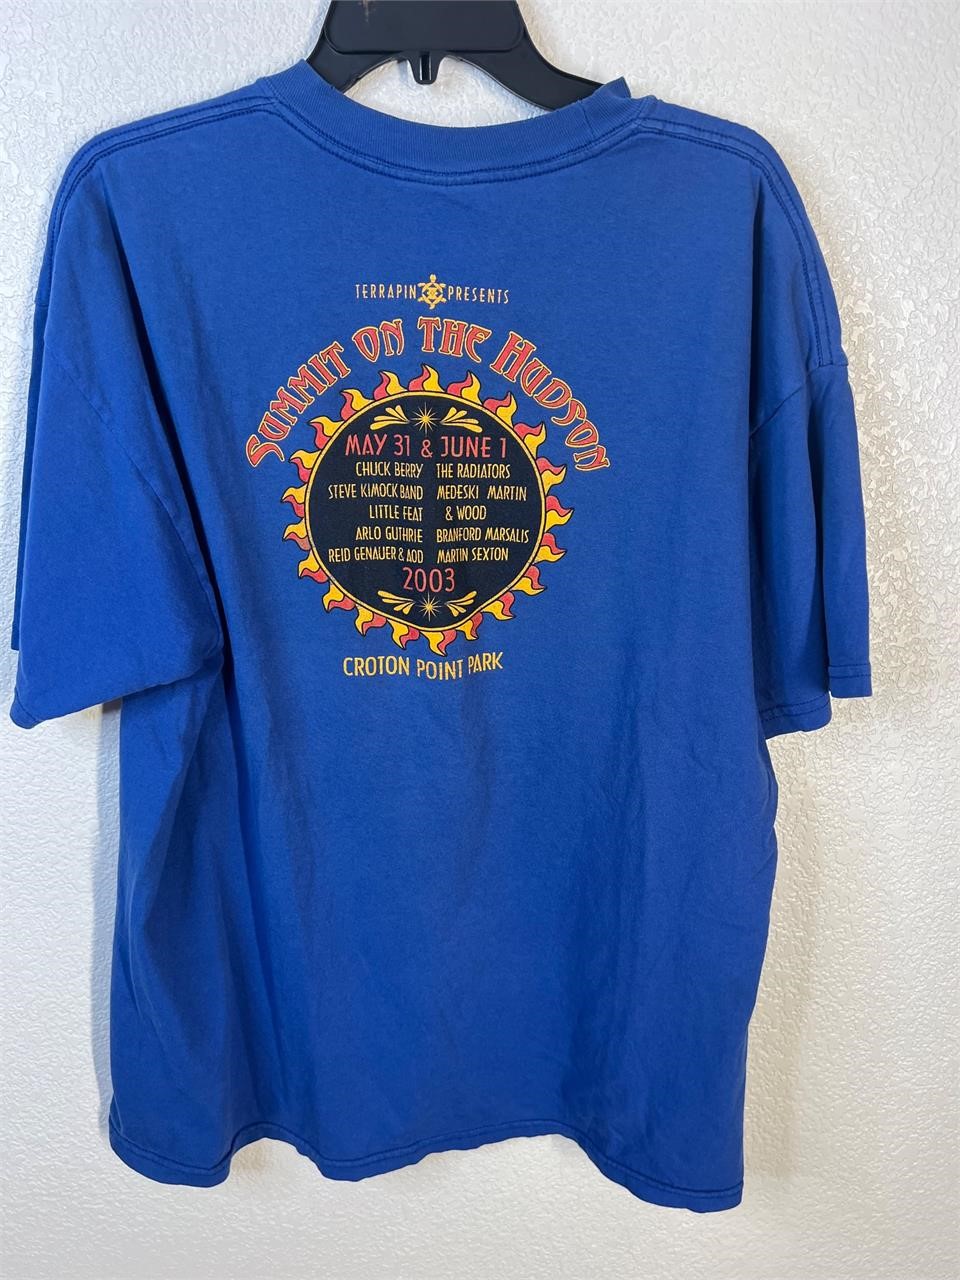 2003 Concert Shirt Chuck Berry Shirt